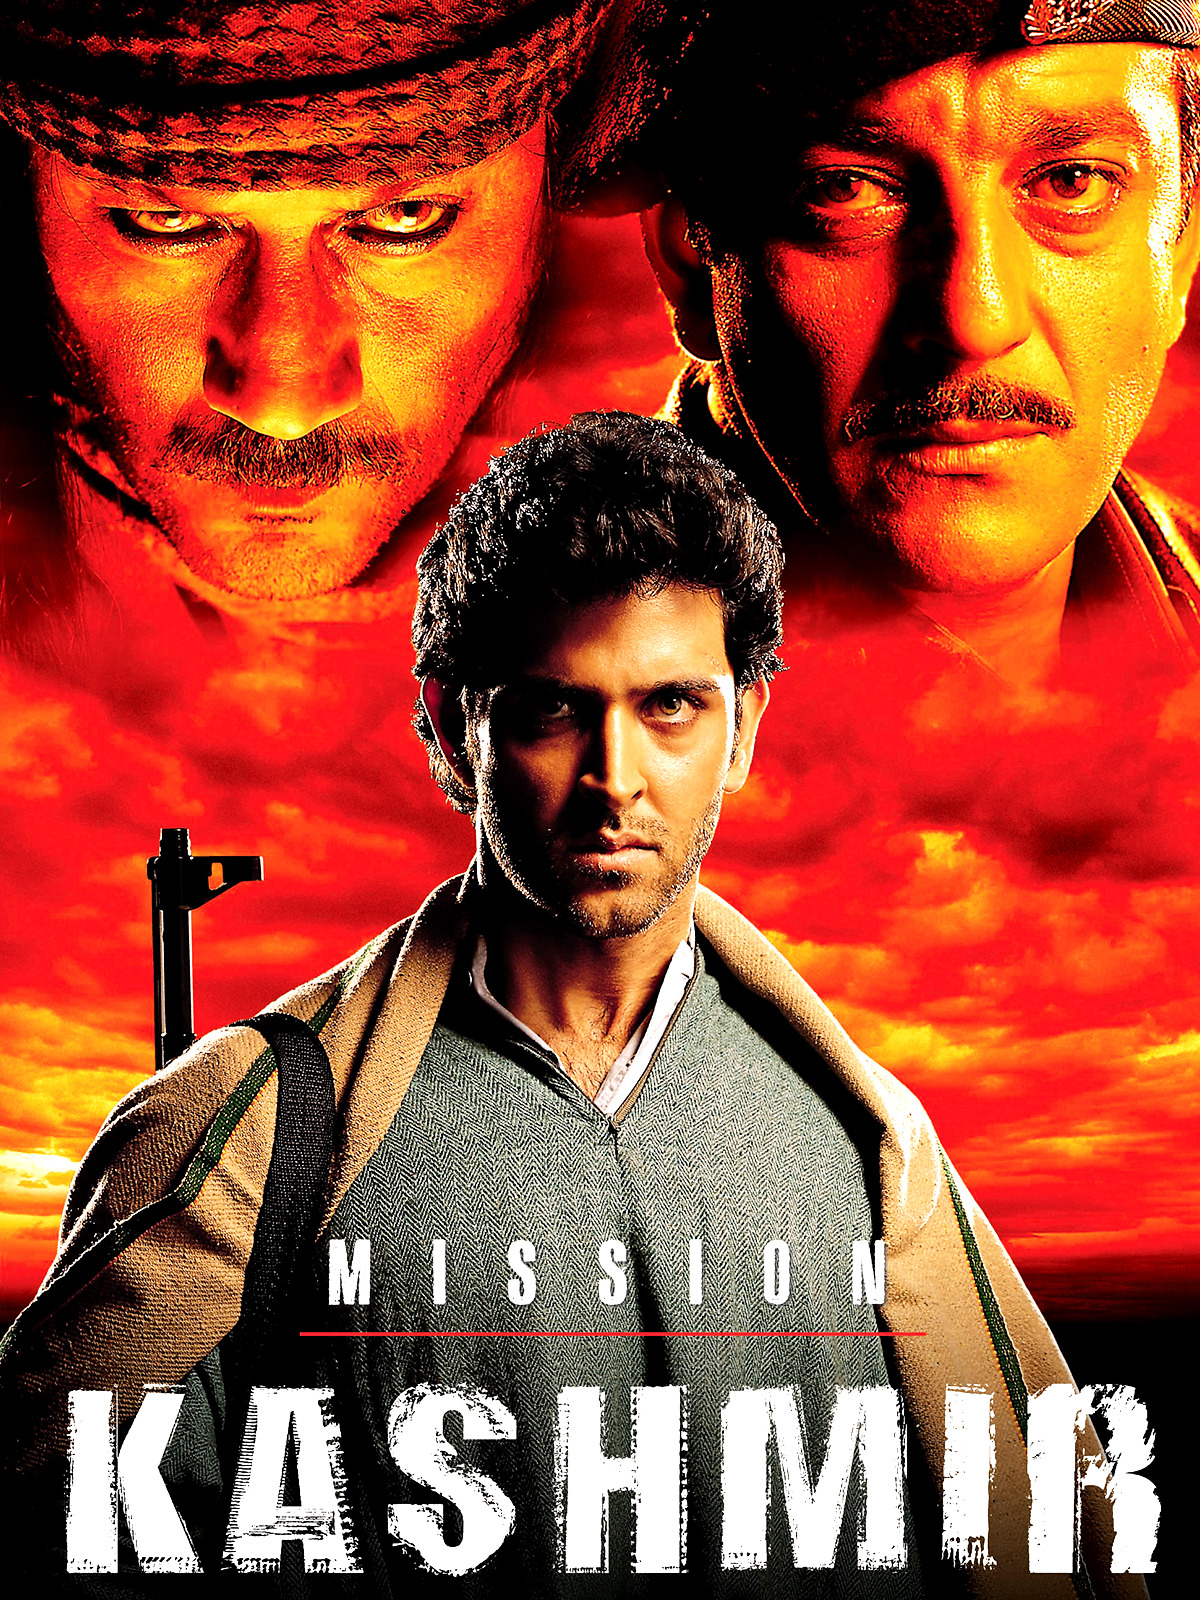 Mission Kashmir 2000 1711 Poster.jpg